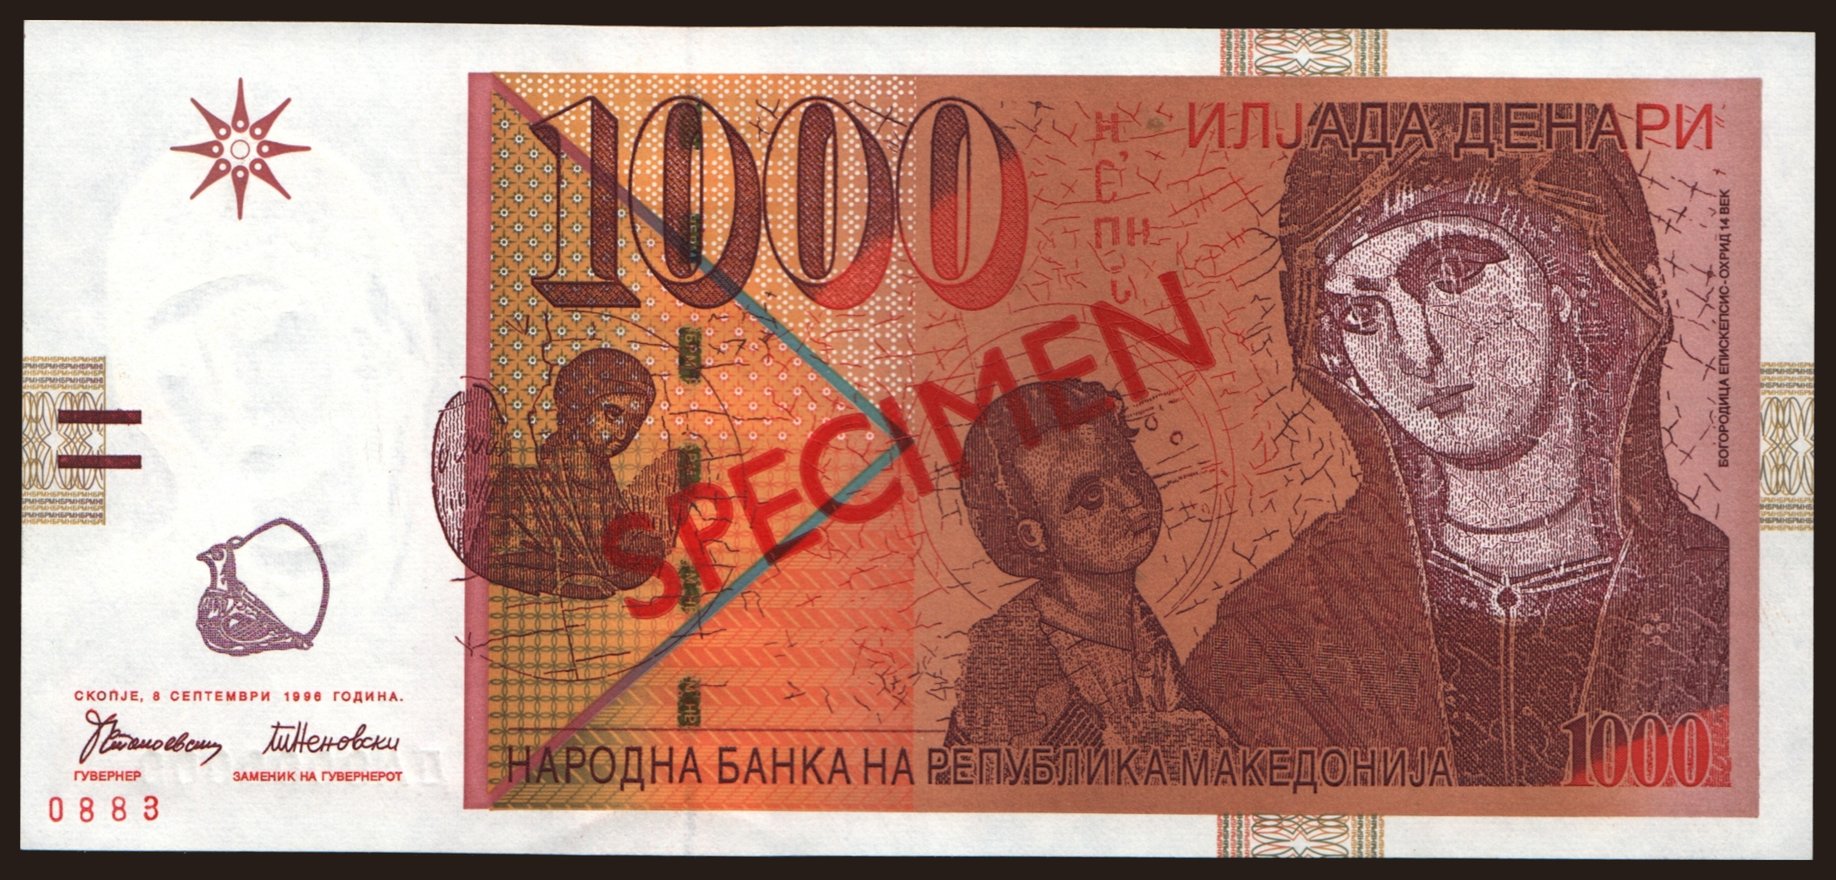 1000 denari, 1996, SPECIMEN